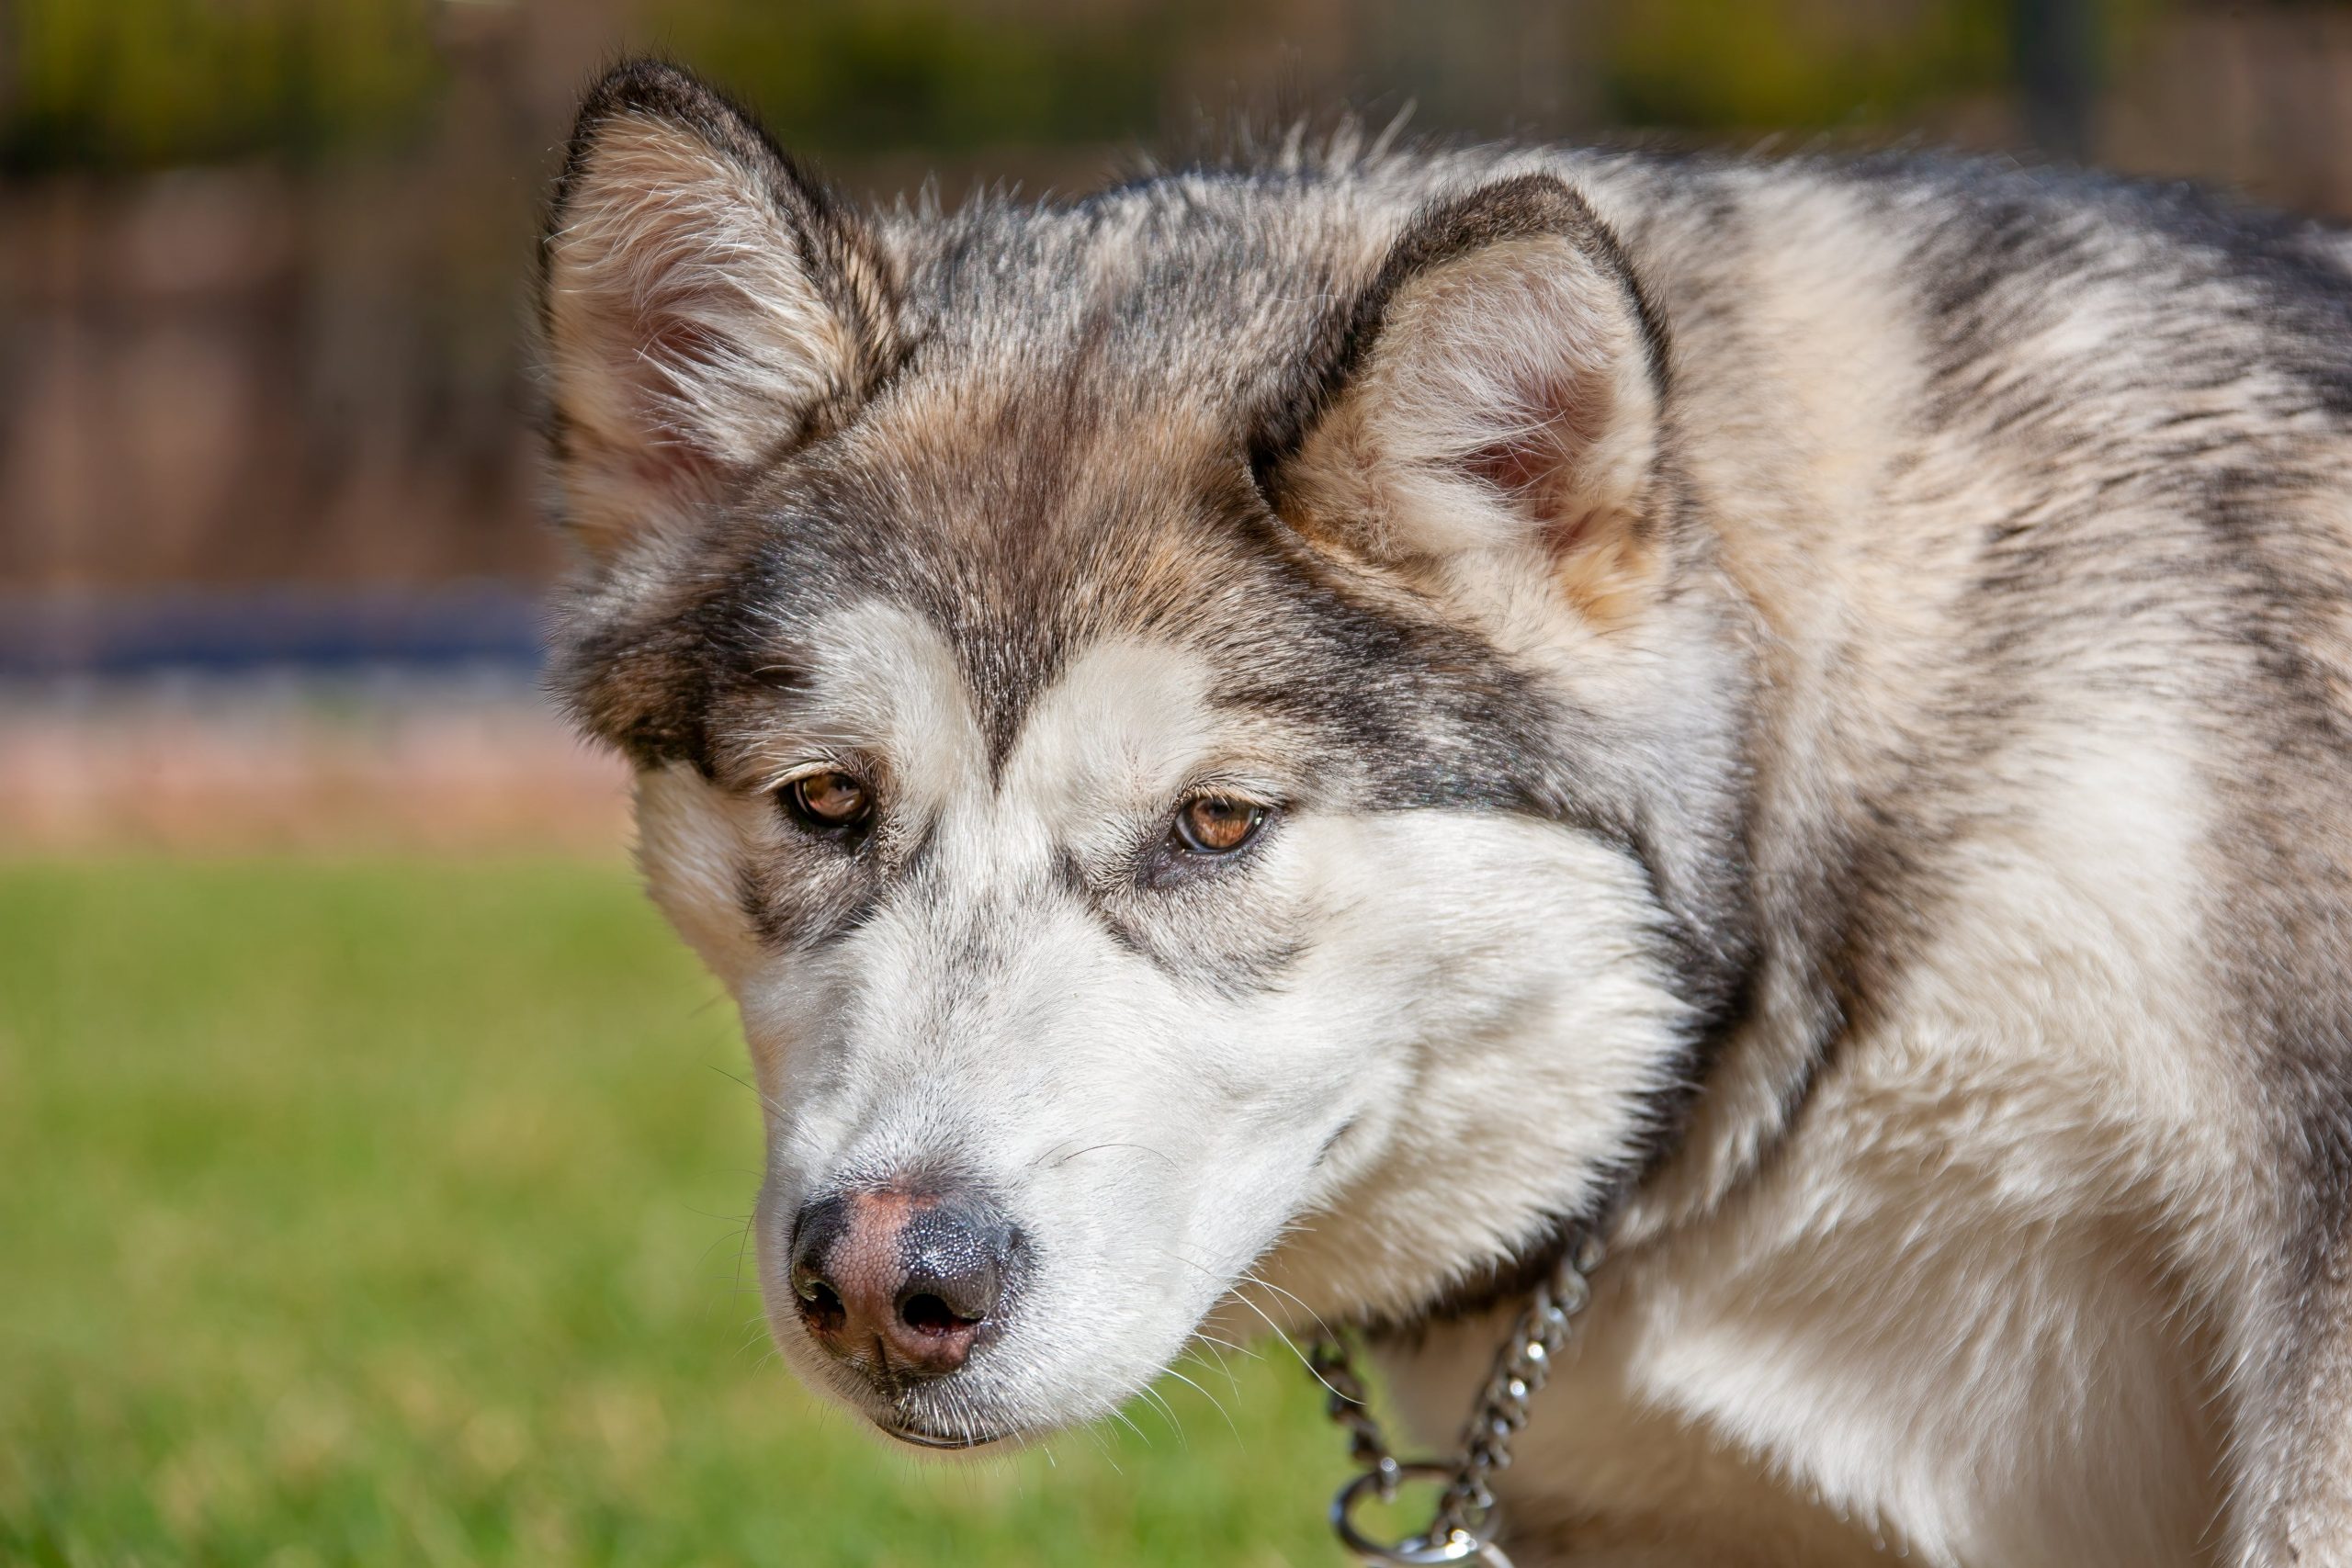 Zijn Alaskan Malamutes de slechtste hond? –Iets om over na te denken